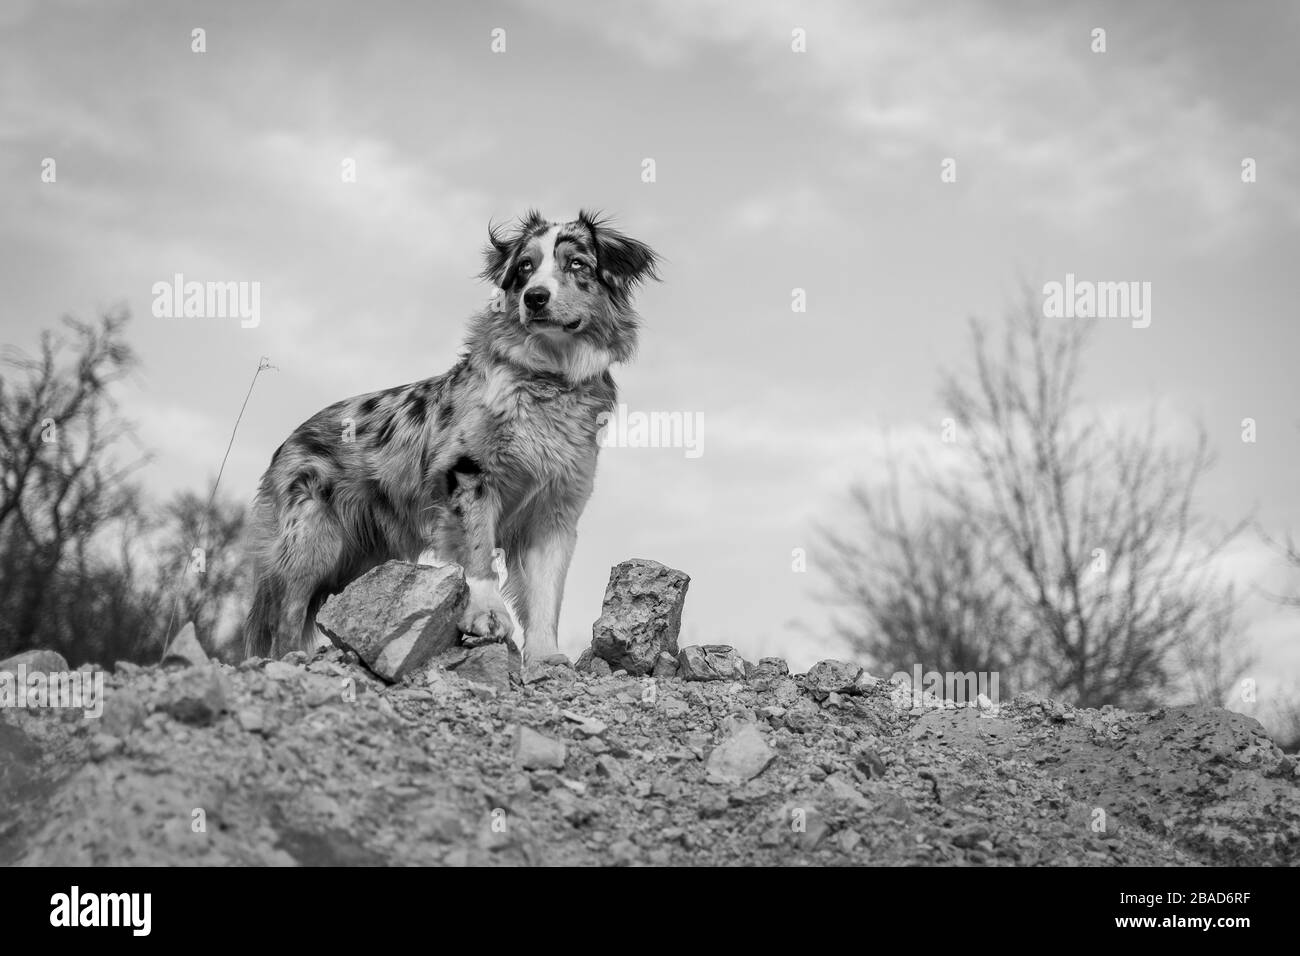 Bluemerle cane pastore australiano in piedi su una roccia nero e bianco Foto Stock